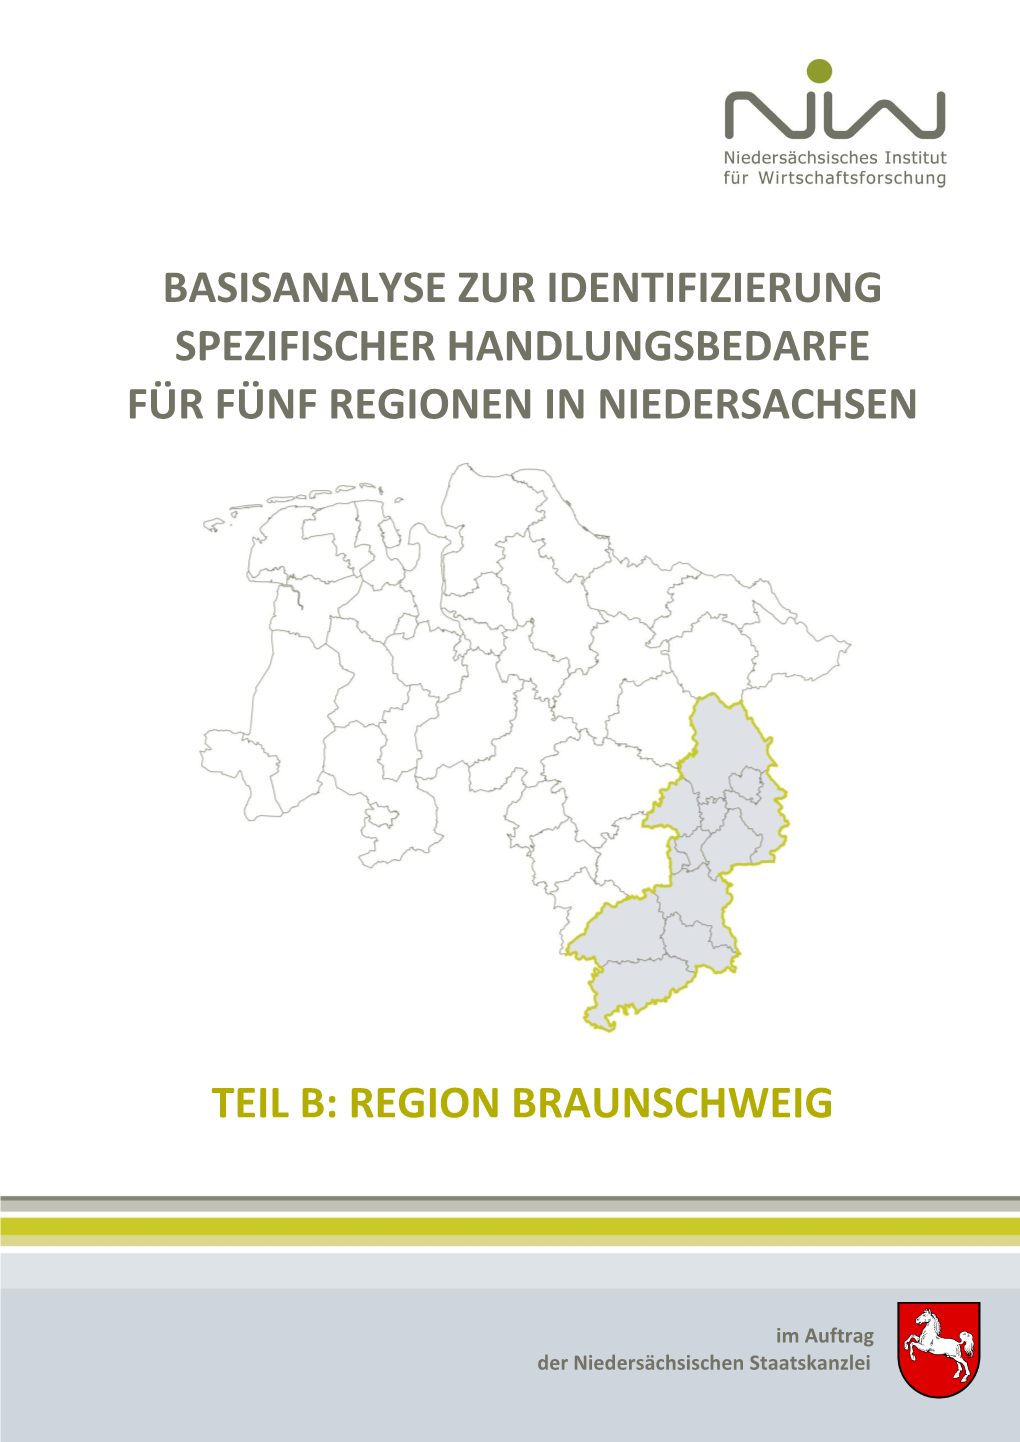 Region Braunschweig